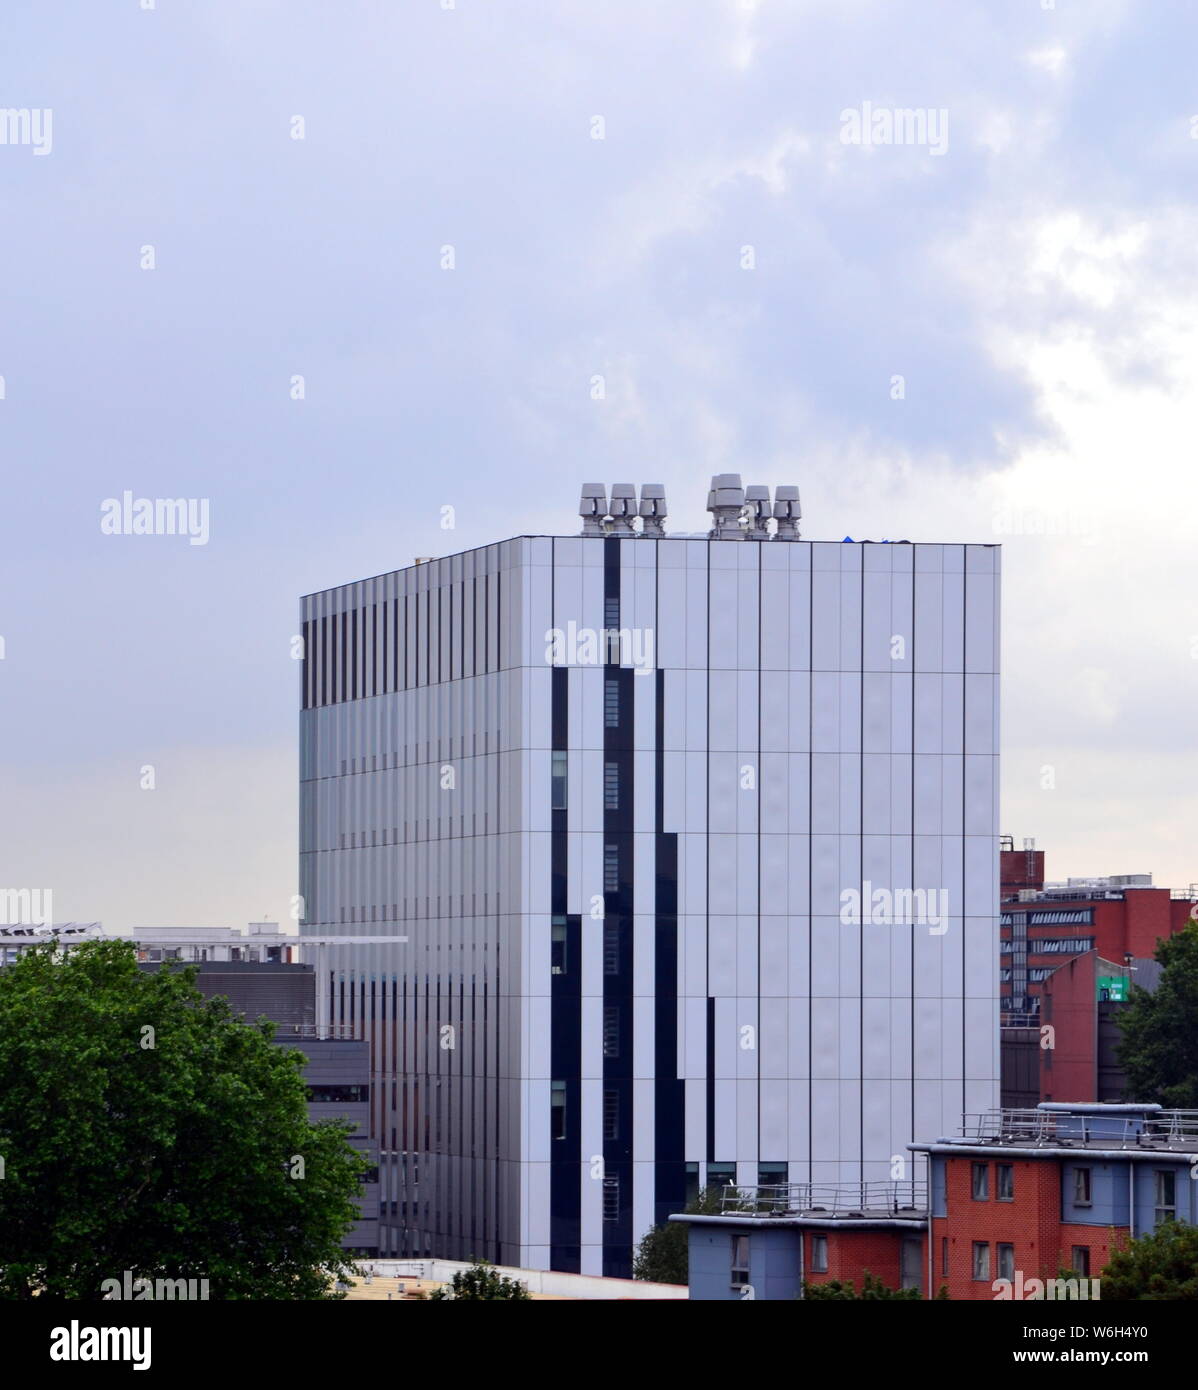 Une vue de haut niveau de l'Université de Manchester's Henry Royce Institute à Manchester, au Royaume-Uni, qui effectue des recherches sur les matériaux avancés. Banque D'Images